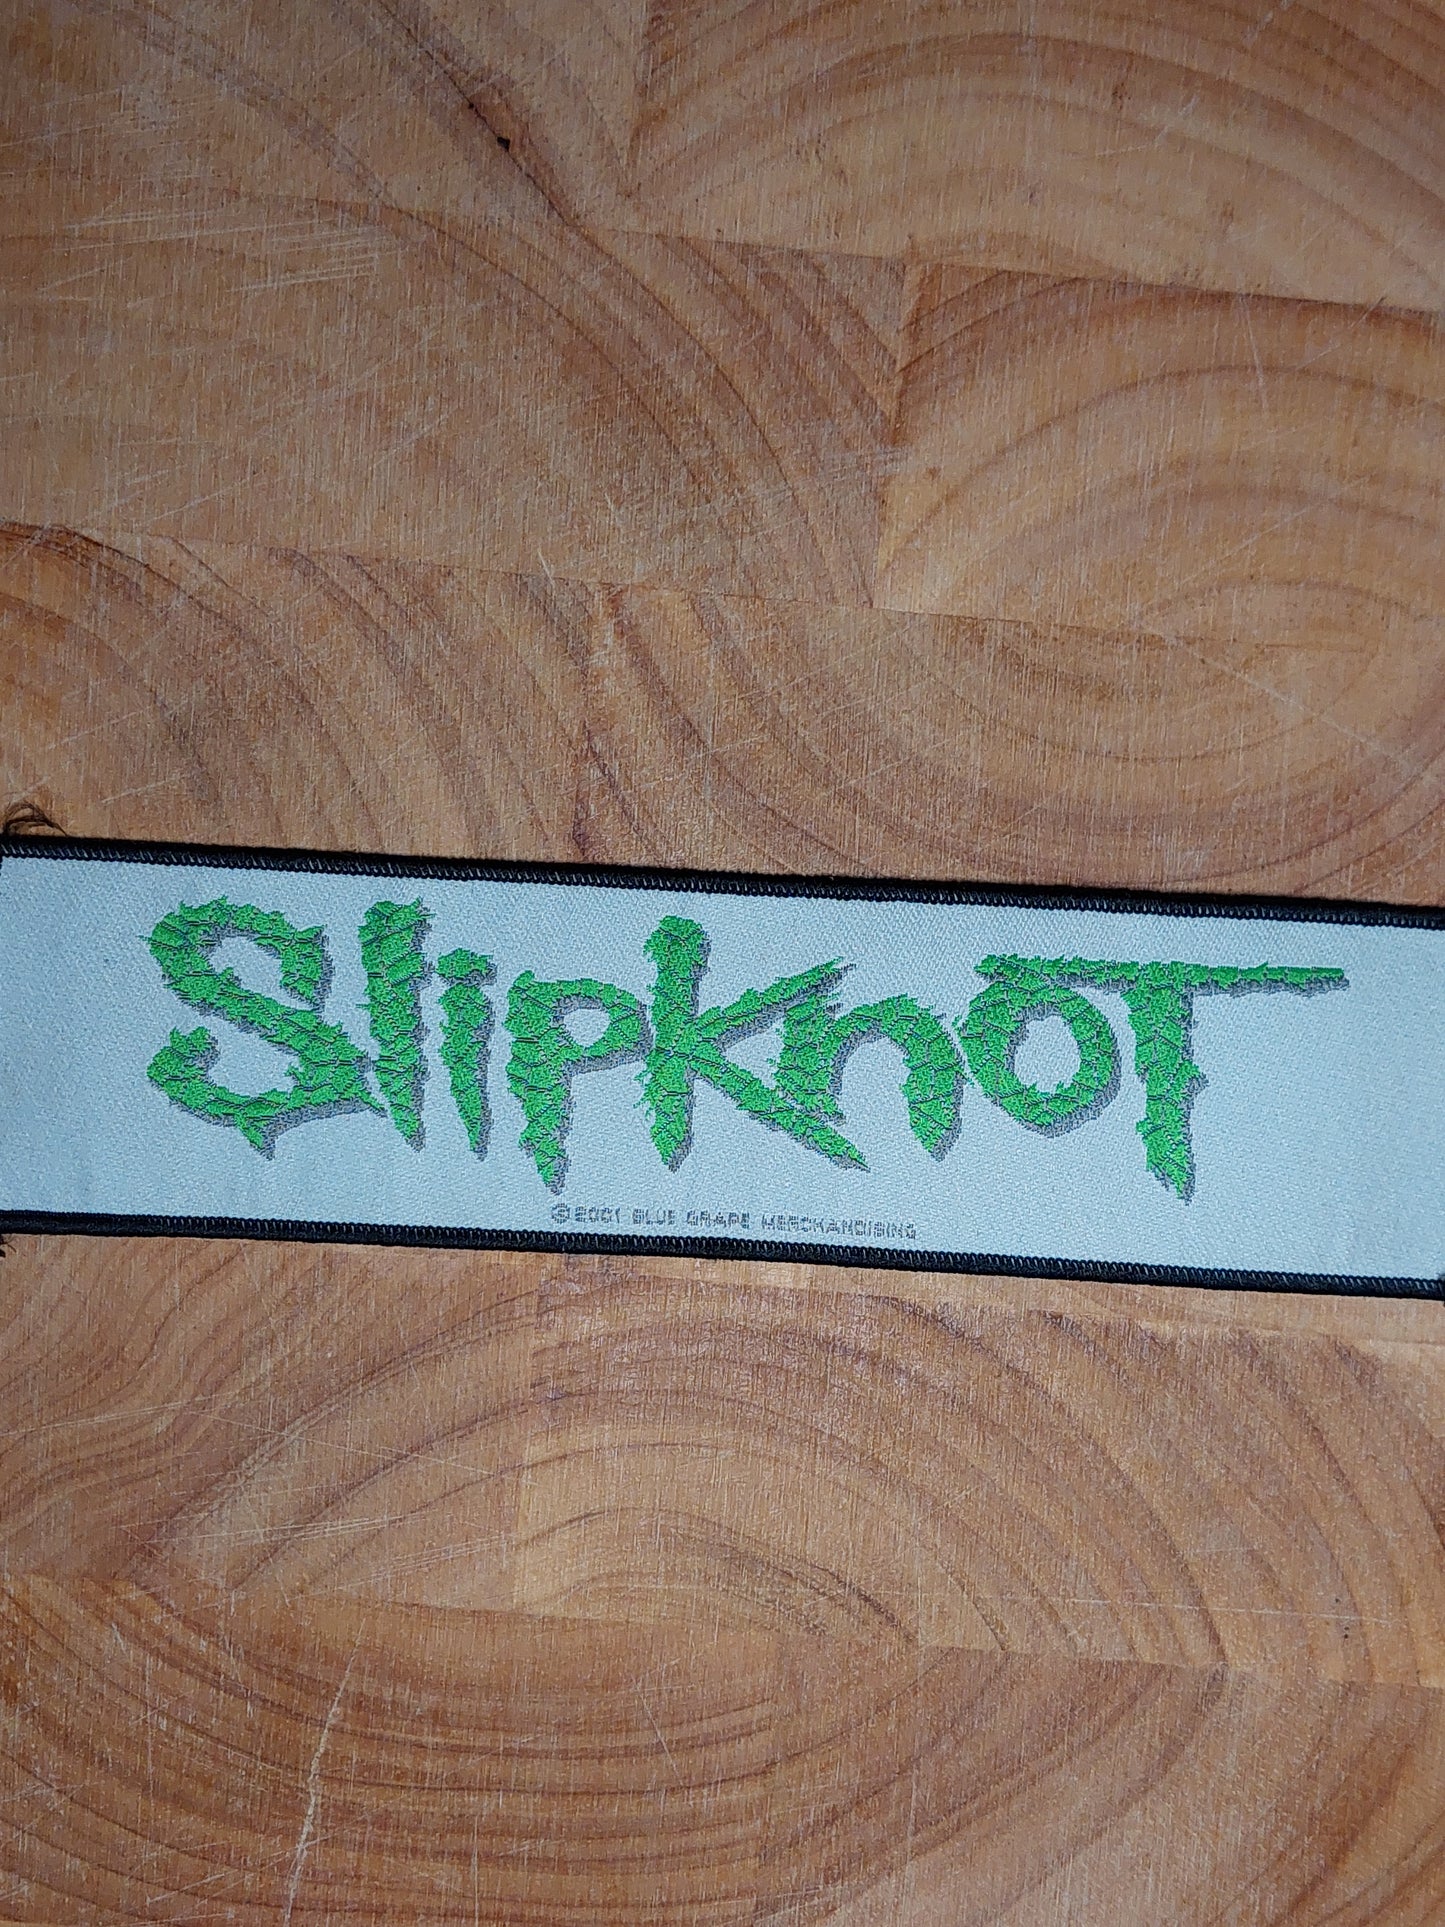 Slipknot logo green